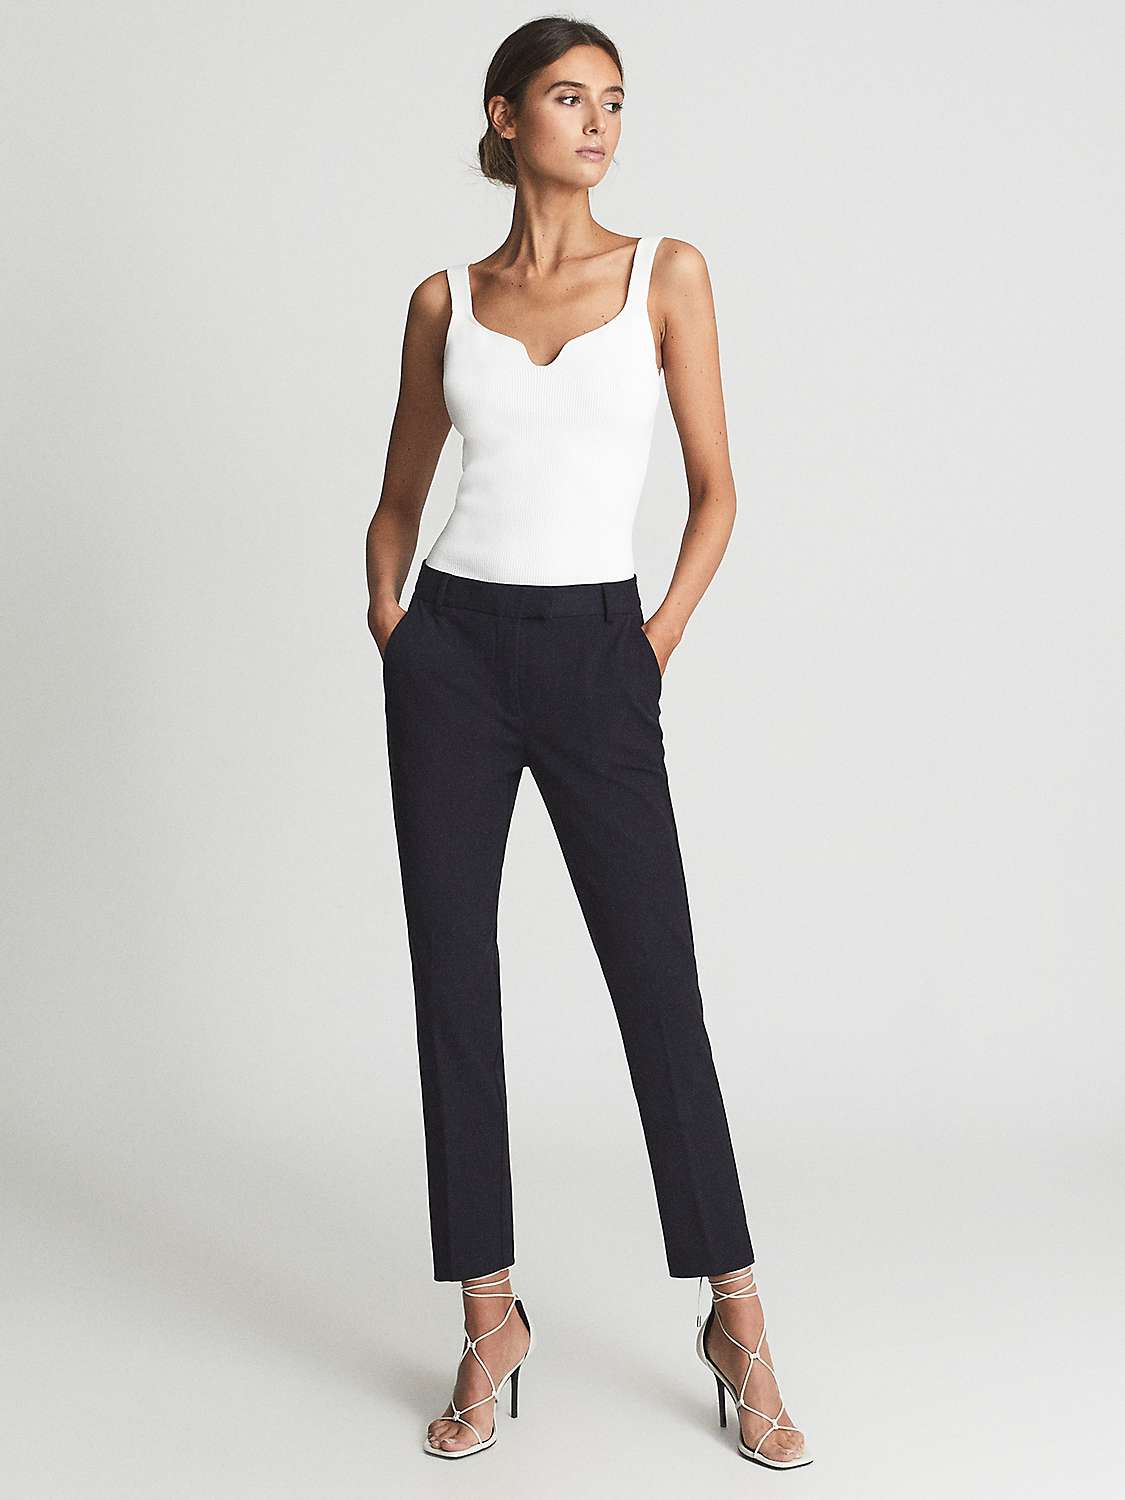 Buy Reiss Joanne Slim Leg Trousers Petite Online at johnlewis.com